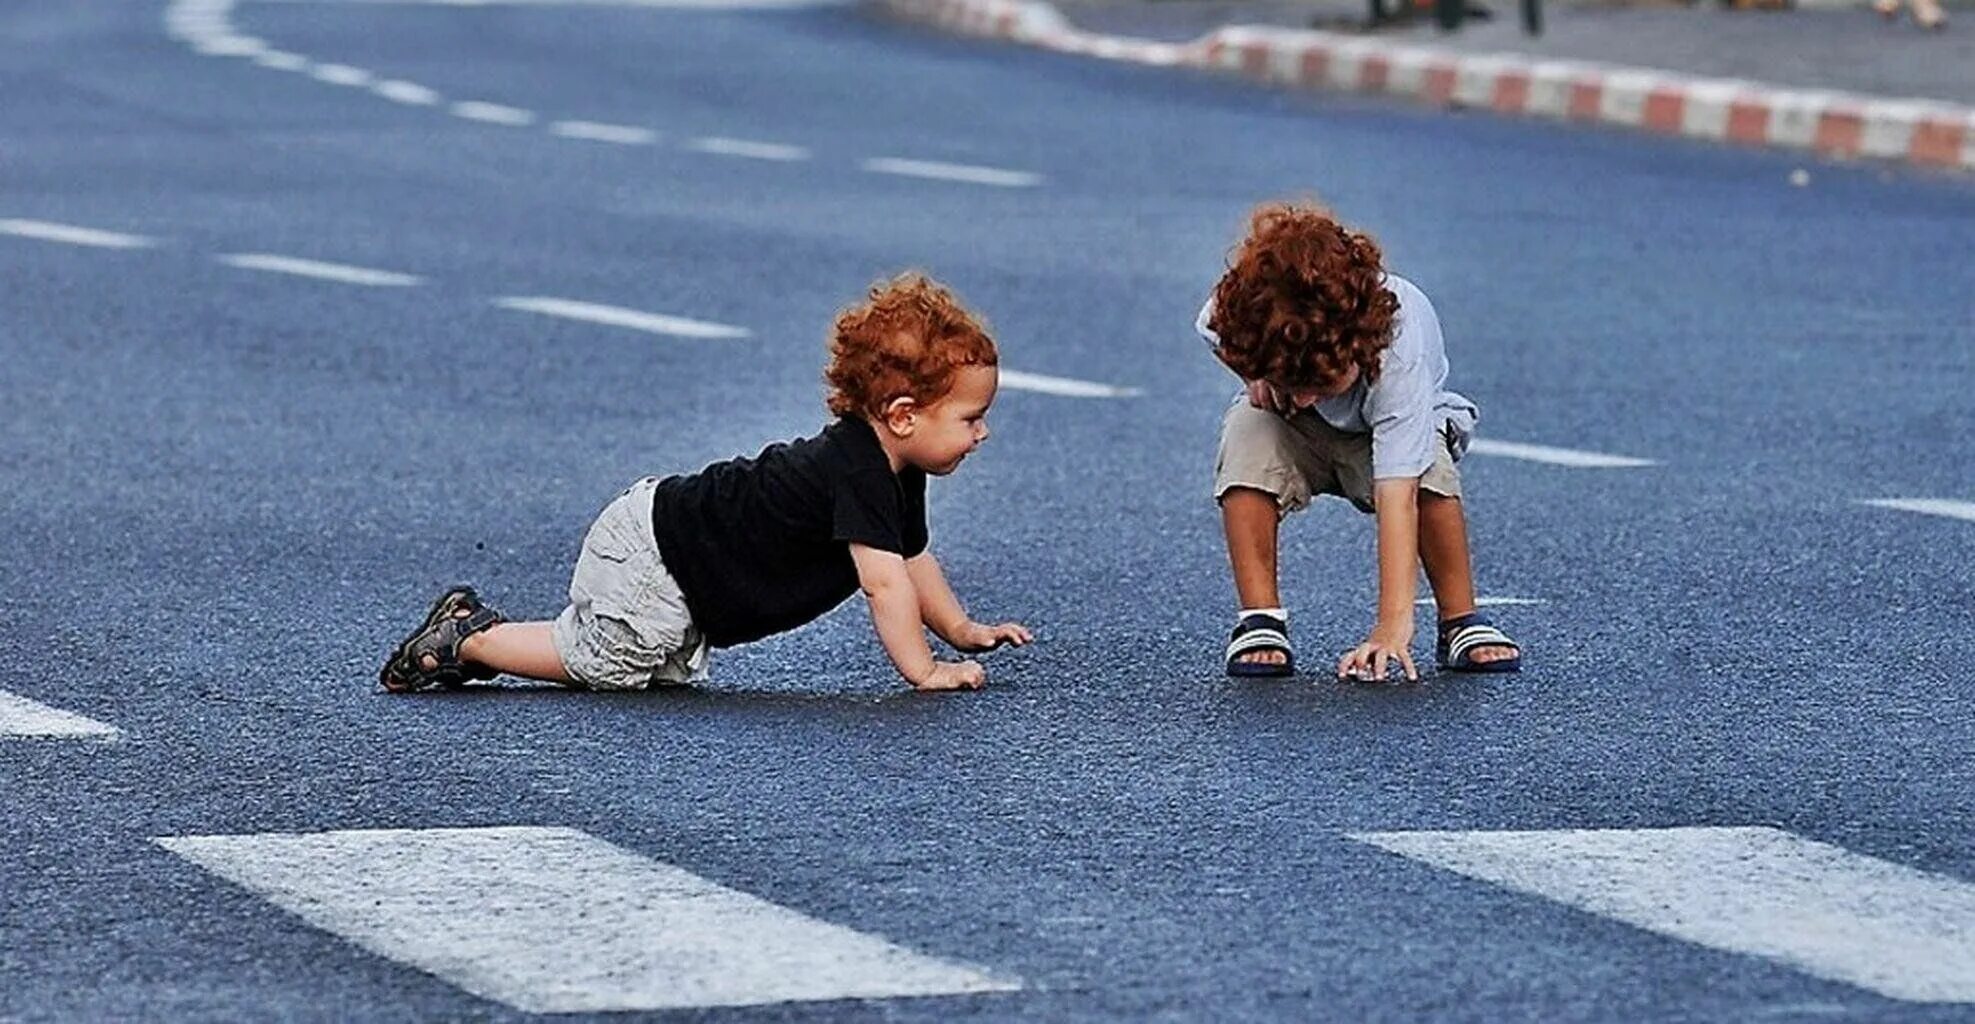 Ту у дорога дети. Дети на дороге. Детский травматизм на дорогах. Дети на дороге летом. Детскийтраымотизм на дороге.